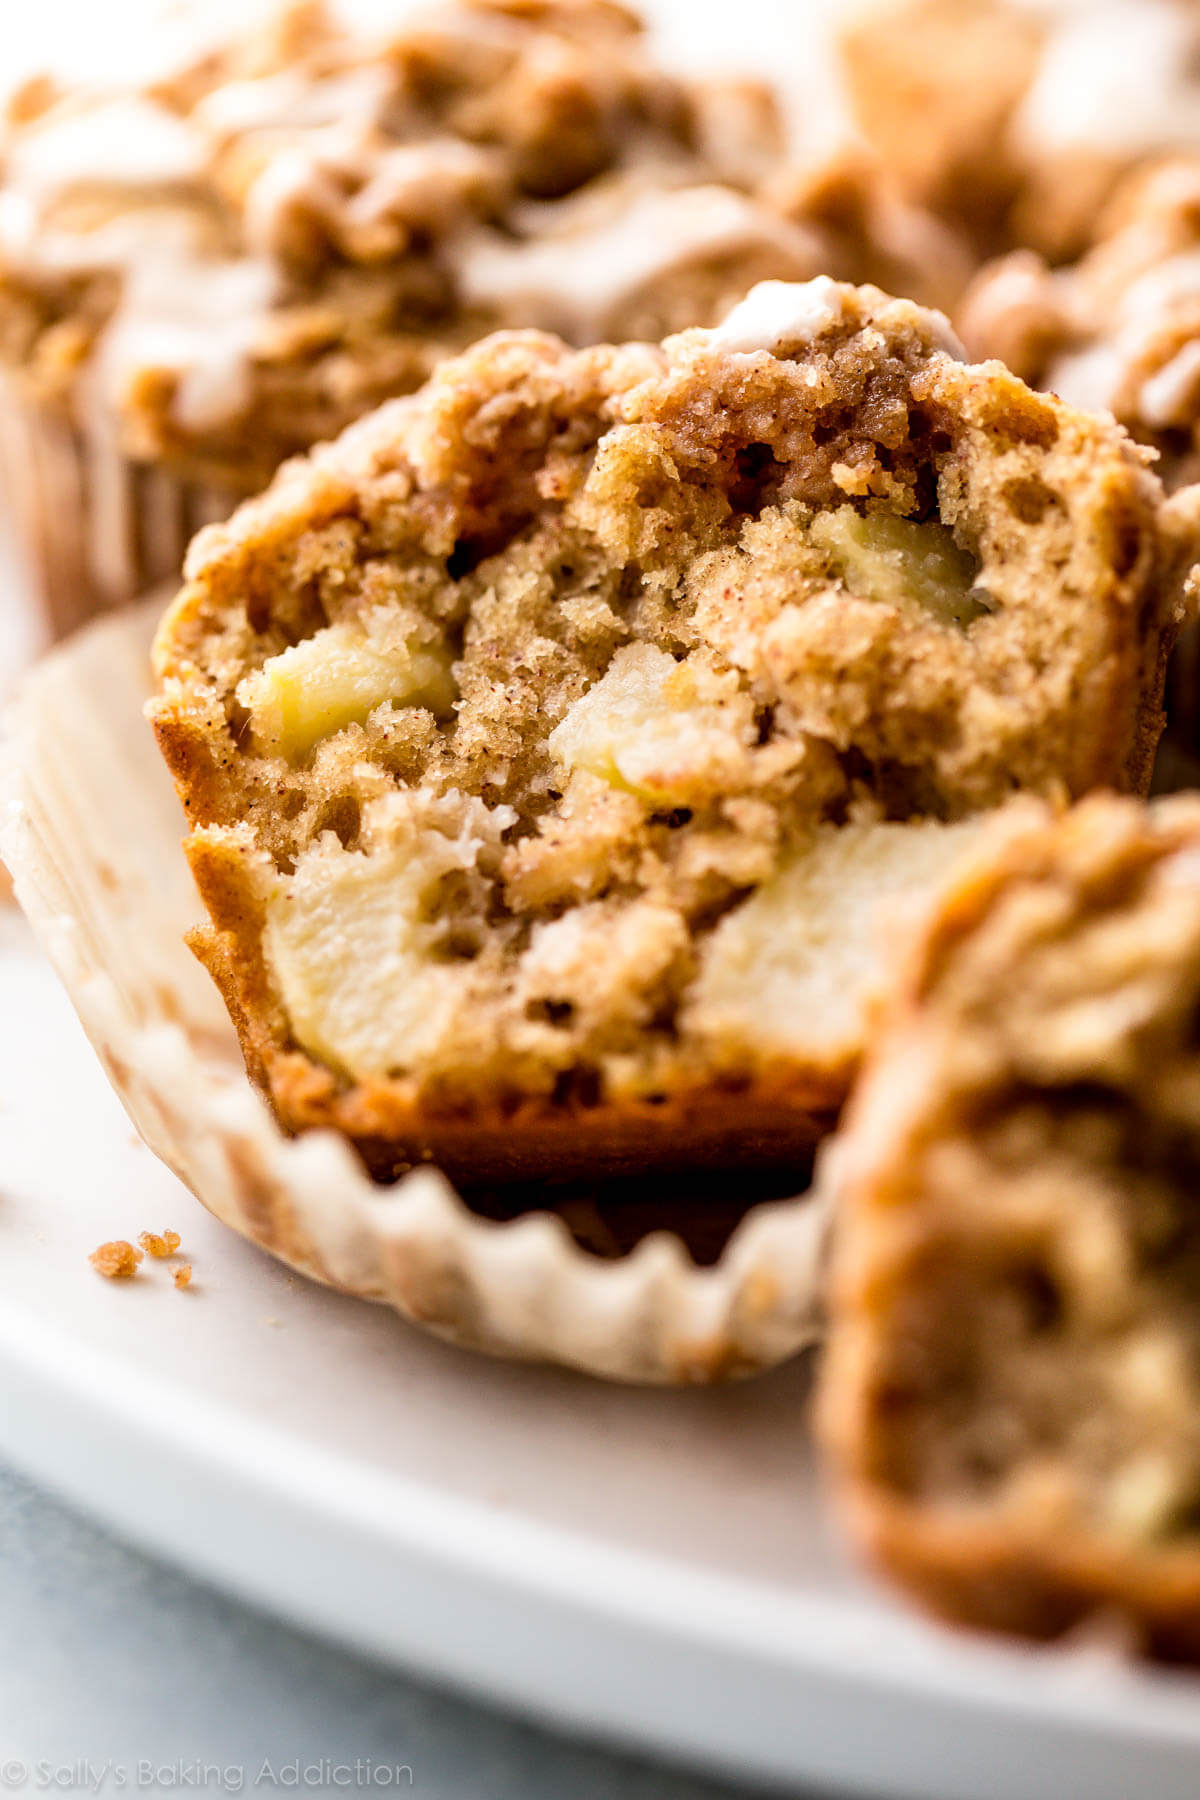 Les muffins aux miettes de pommes regorgent de pommes à chaque bouchée! Recette sur sallysbakingaddiction.com